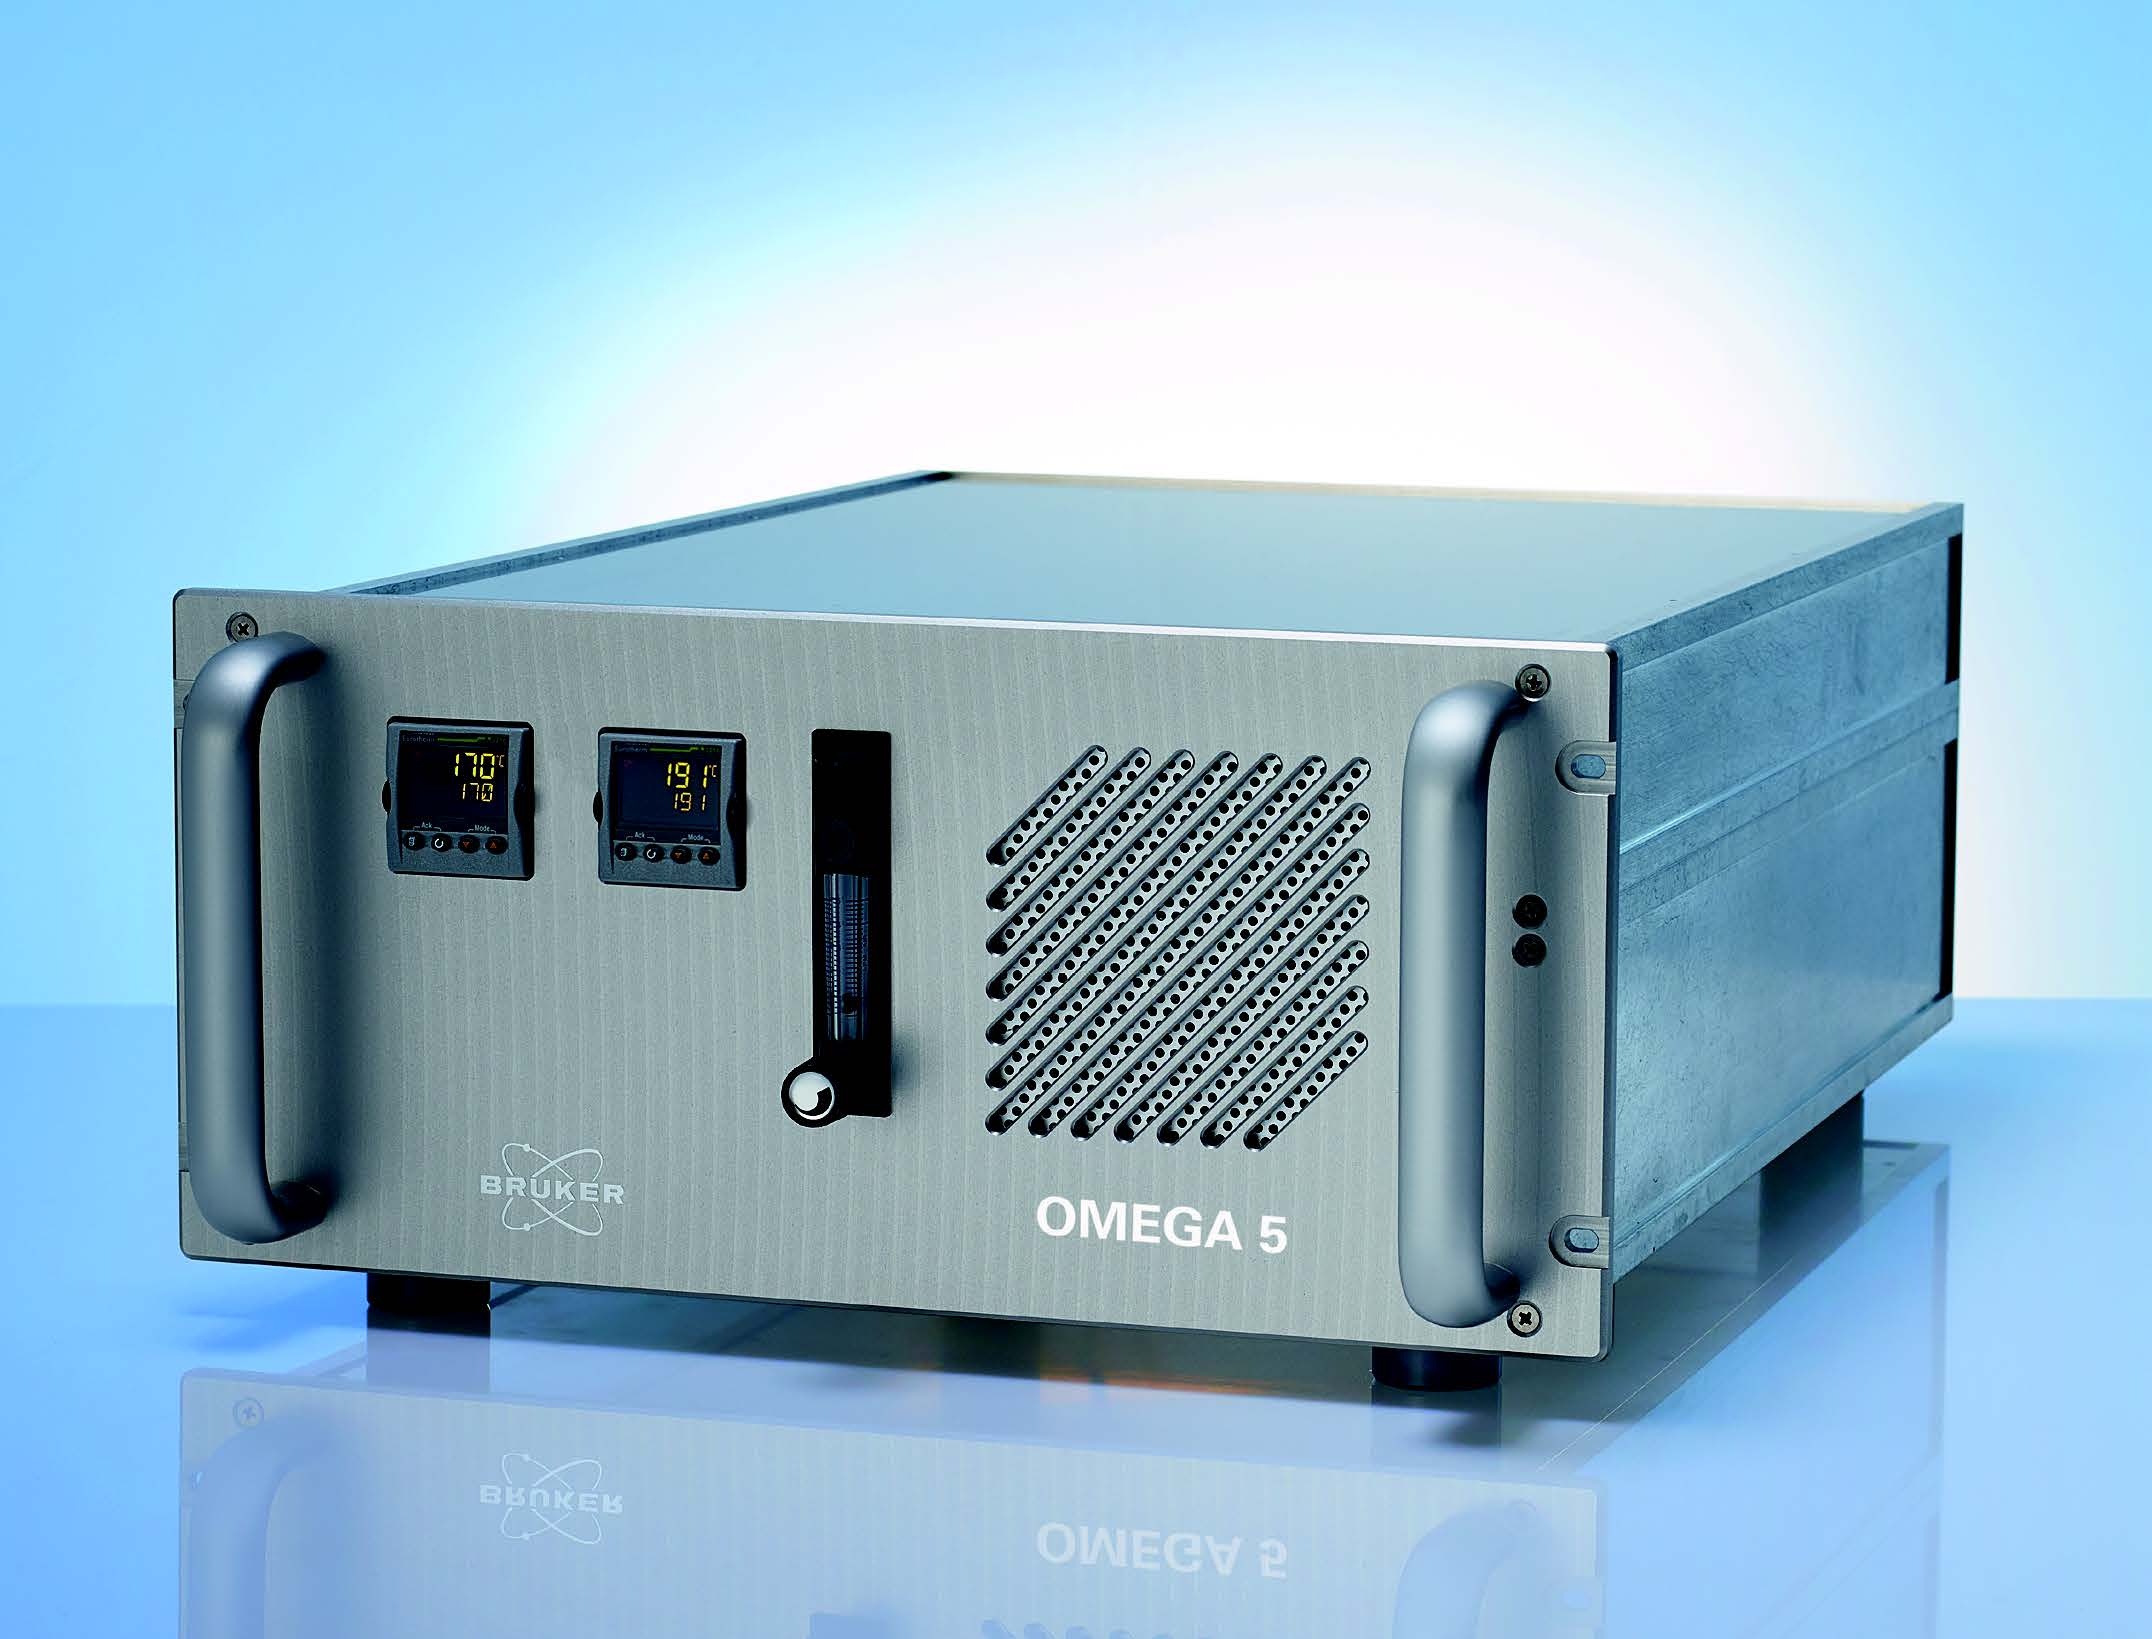 布鲁克OMEGA 5通用型气体分析仪